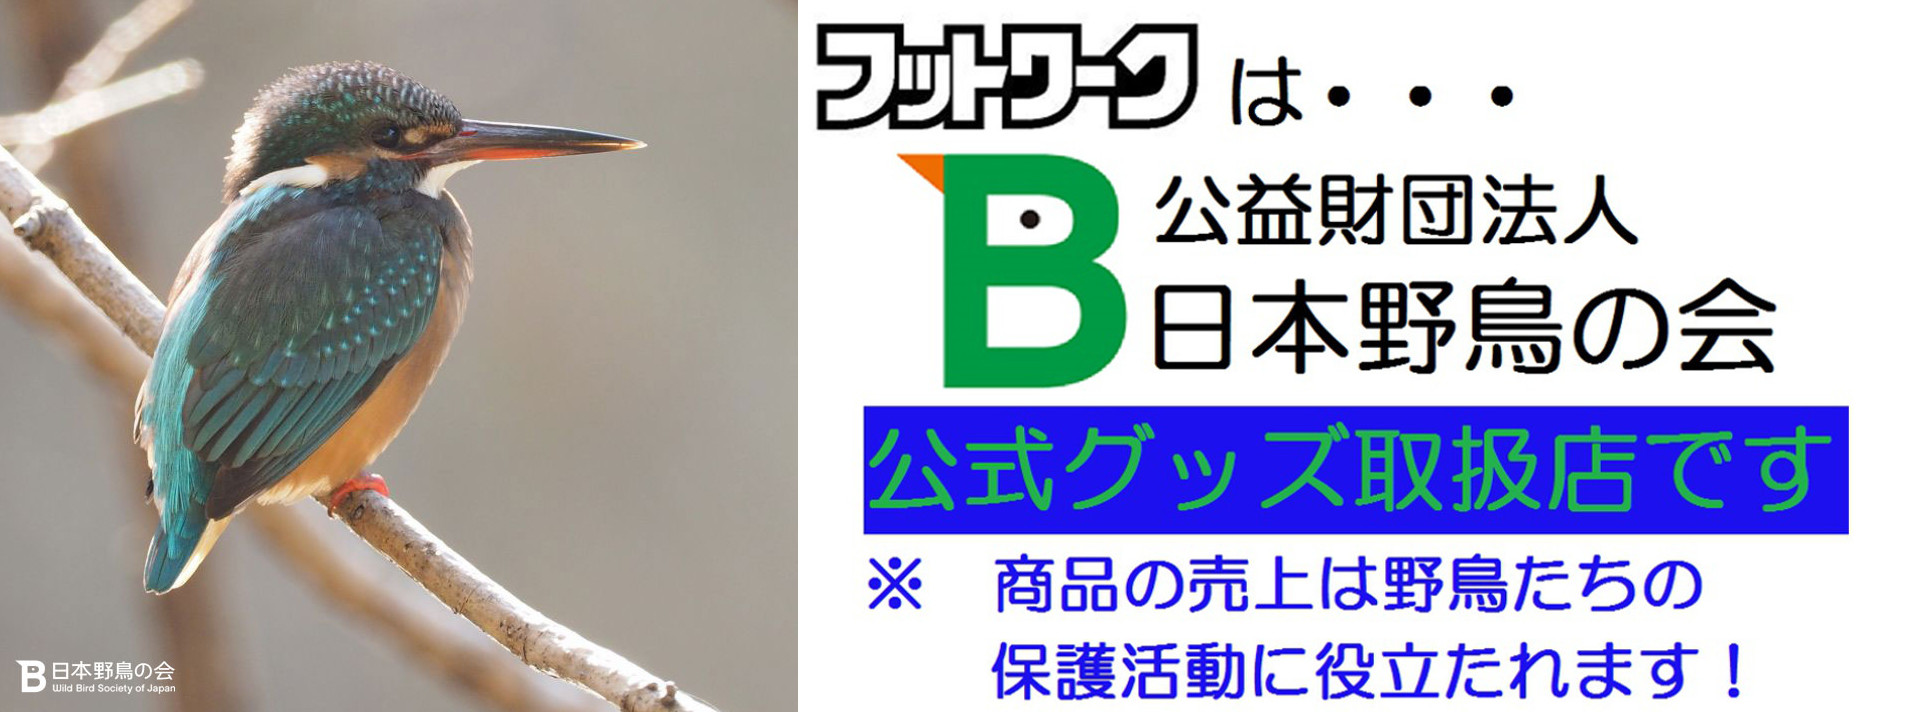 フットワークは、公益財団法人「日本野鳥の会」公式グッズ取扱店です。